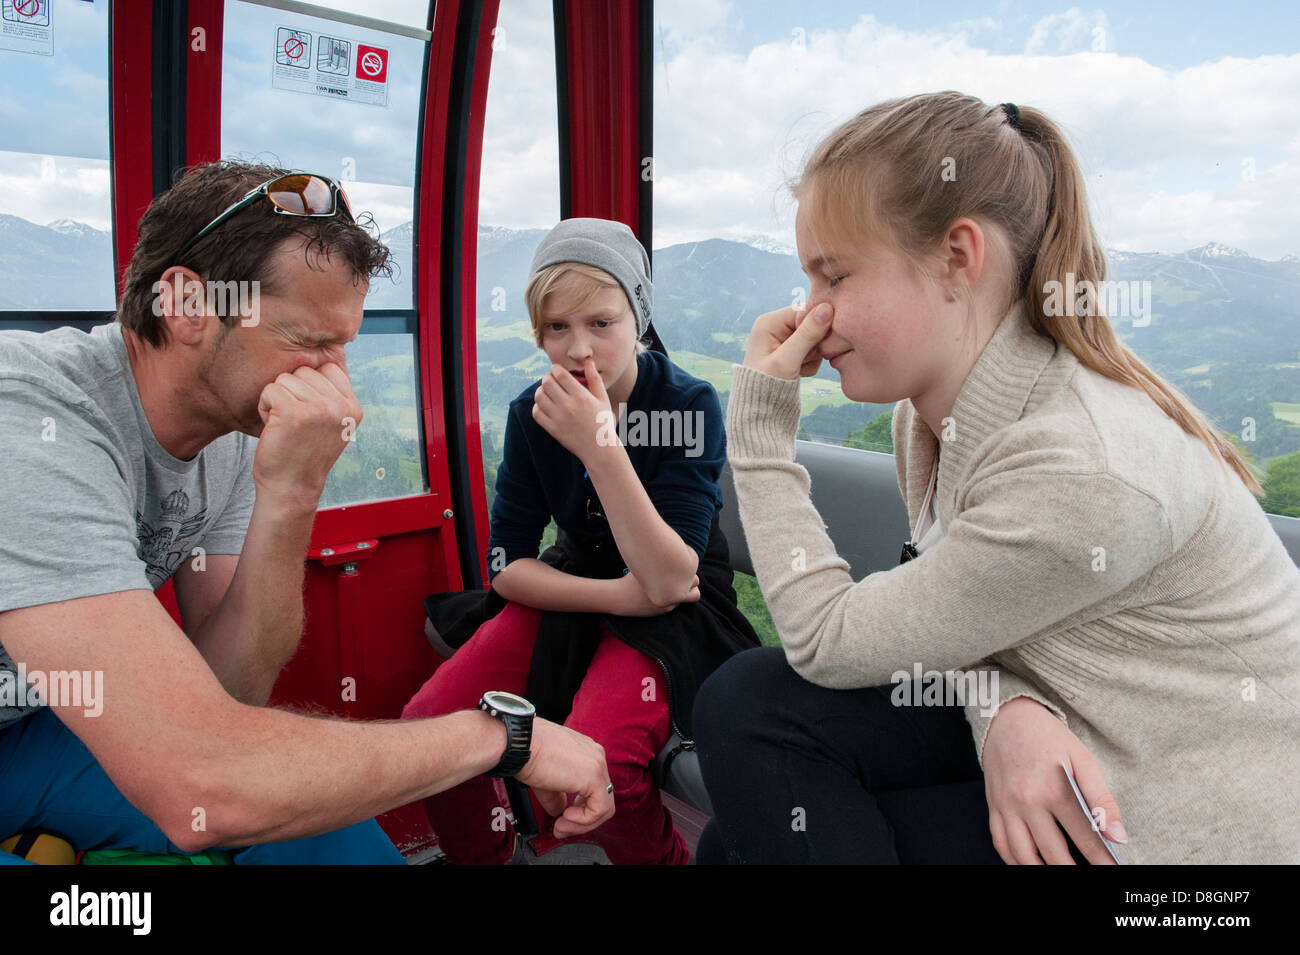 Luft Druck Release Technik demonstriert durch Joe Astner, Luis Truppel und Lara Maunder in einem Berg Aufzug, Hopfgarten, Tirol Stockfoto